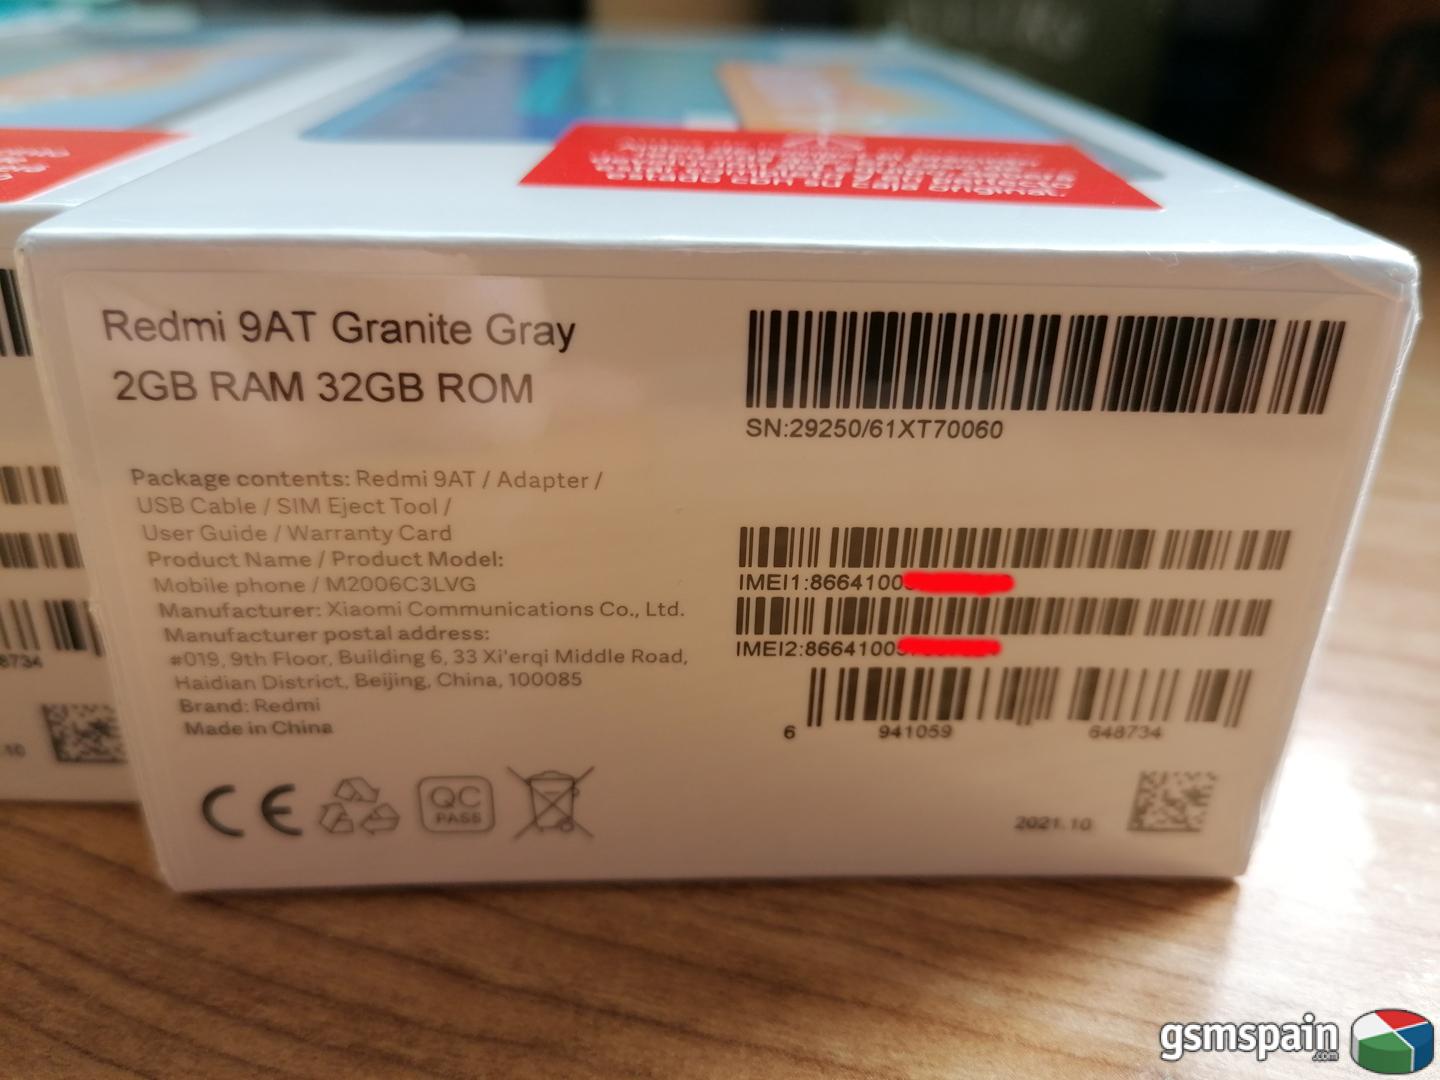 [VENDO] XIAOMI Redmi 9 AT Granite Gray 2GB RAM 32 GB ROM